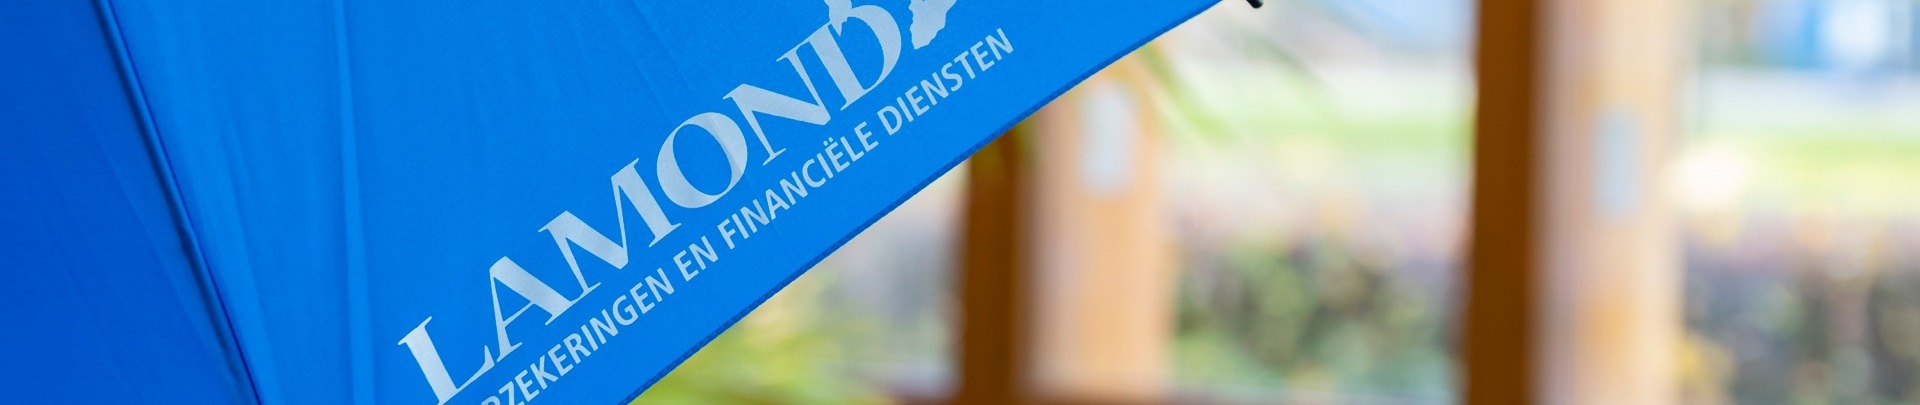 Een blauwe paraplu met daarop het logo van Lamond Verzekeringen & Financiële diensten